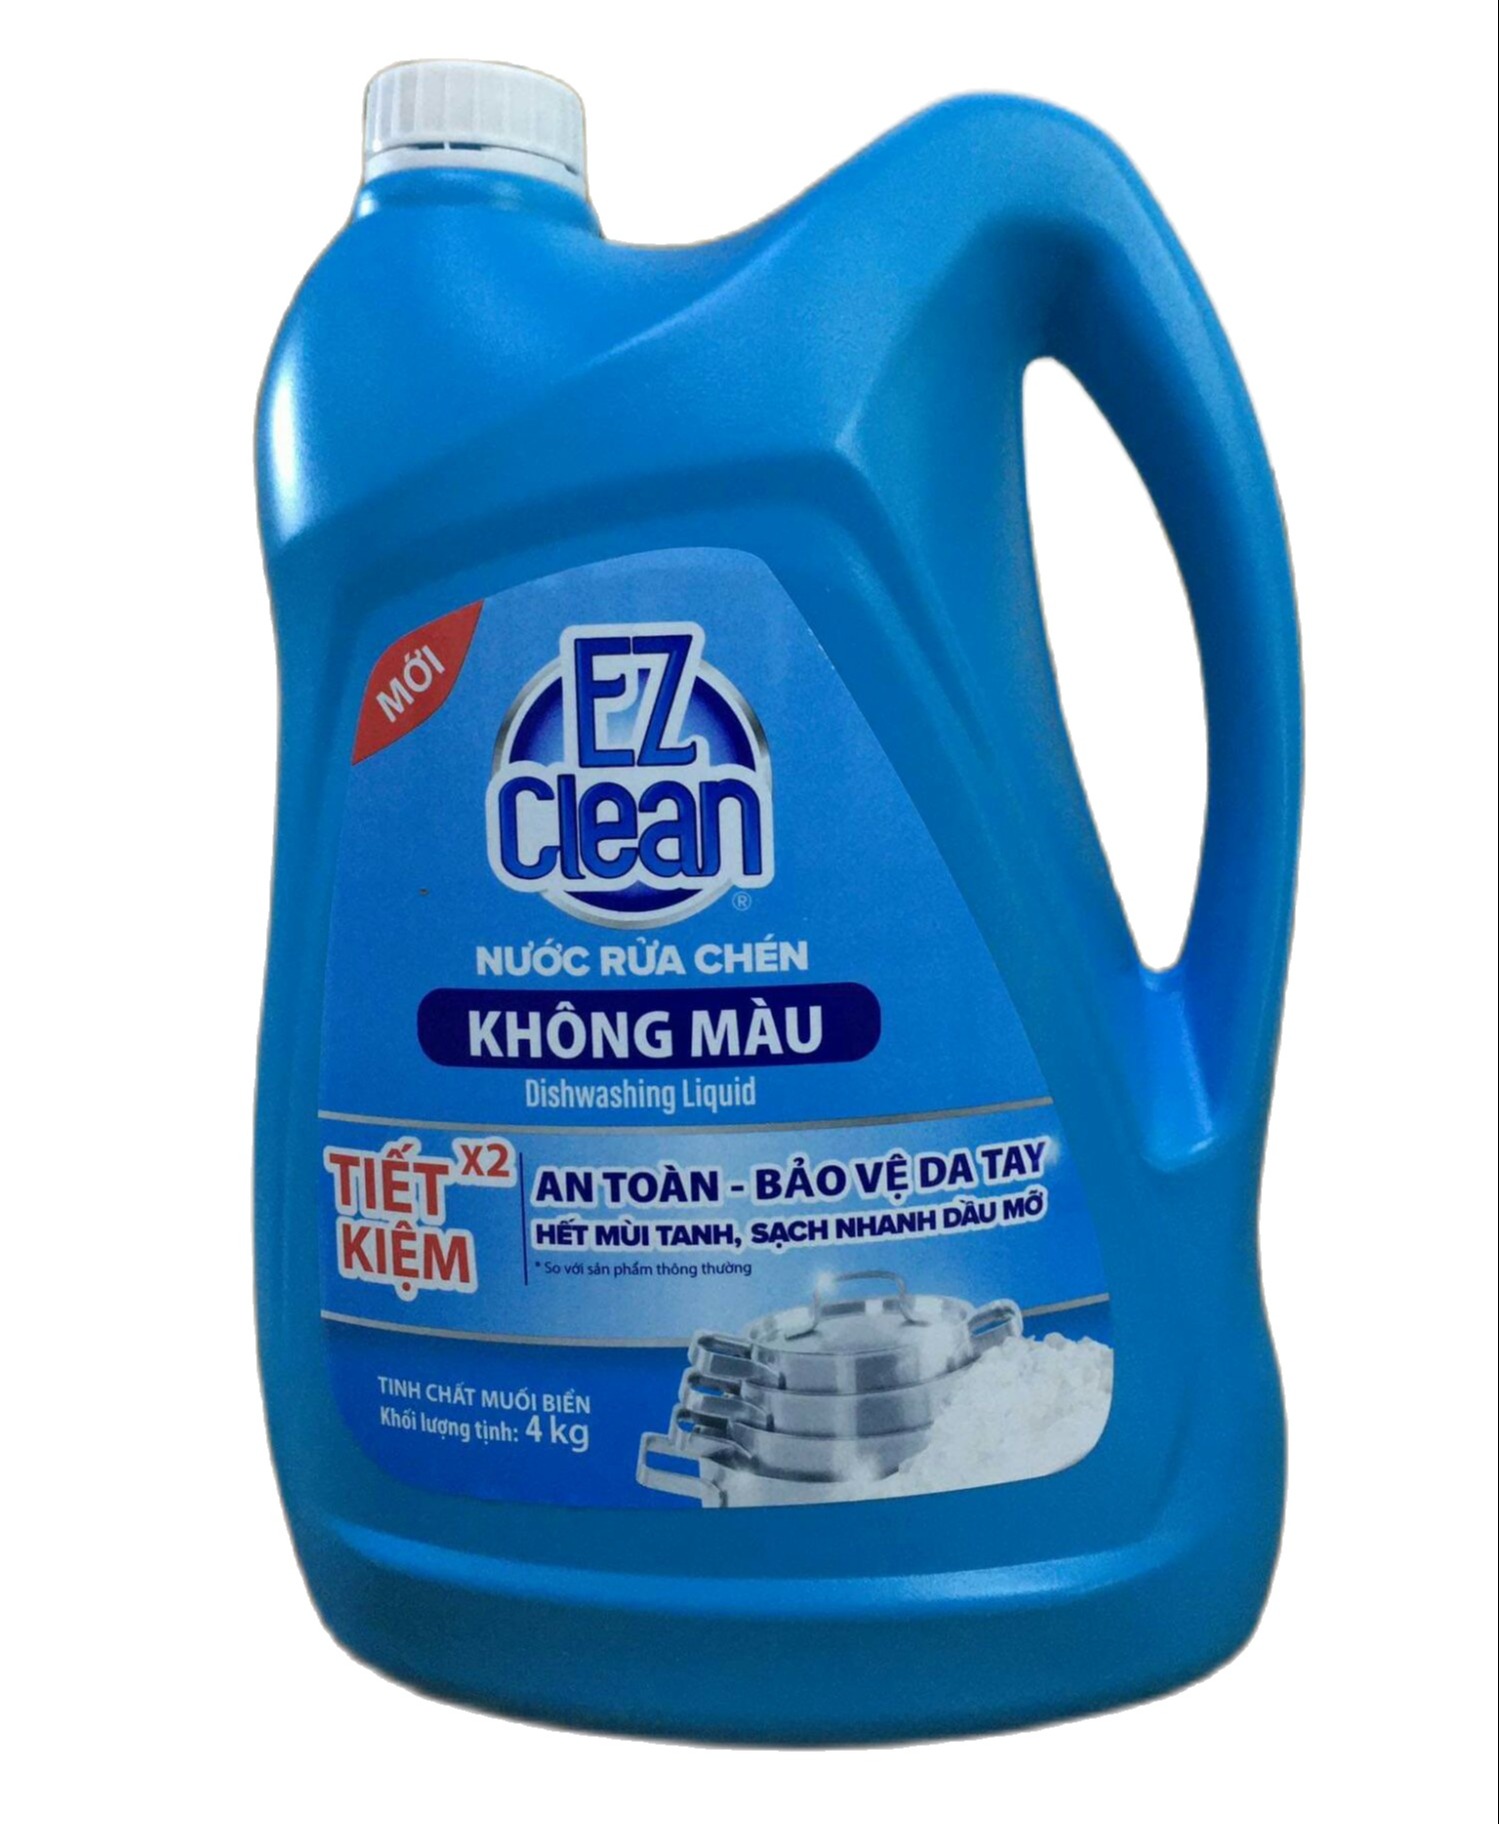 Nước rửa chén tinh dầu không màu EZ Clean  Mua 4 can tặng 1 can